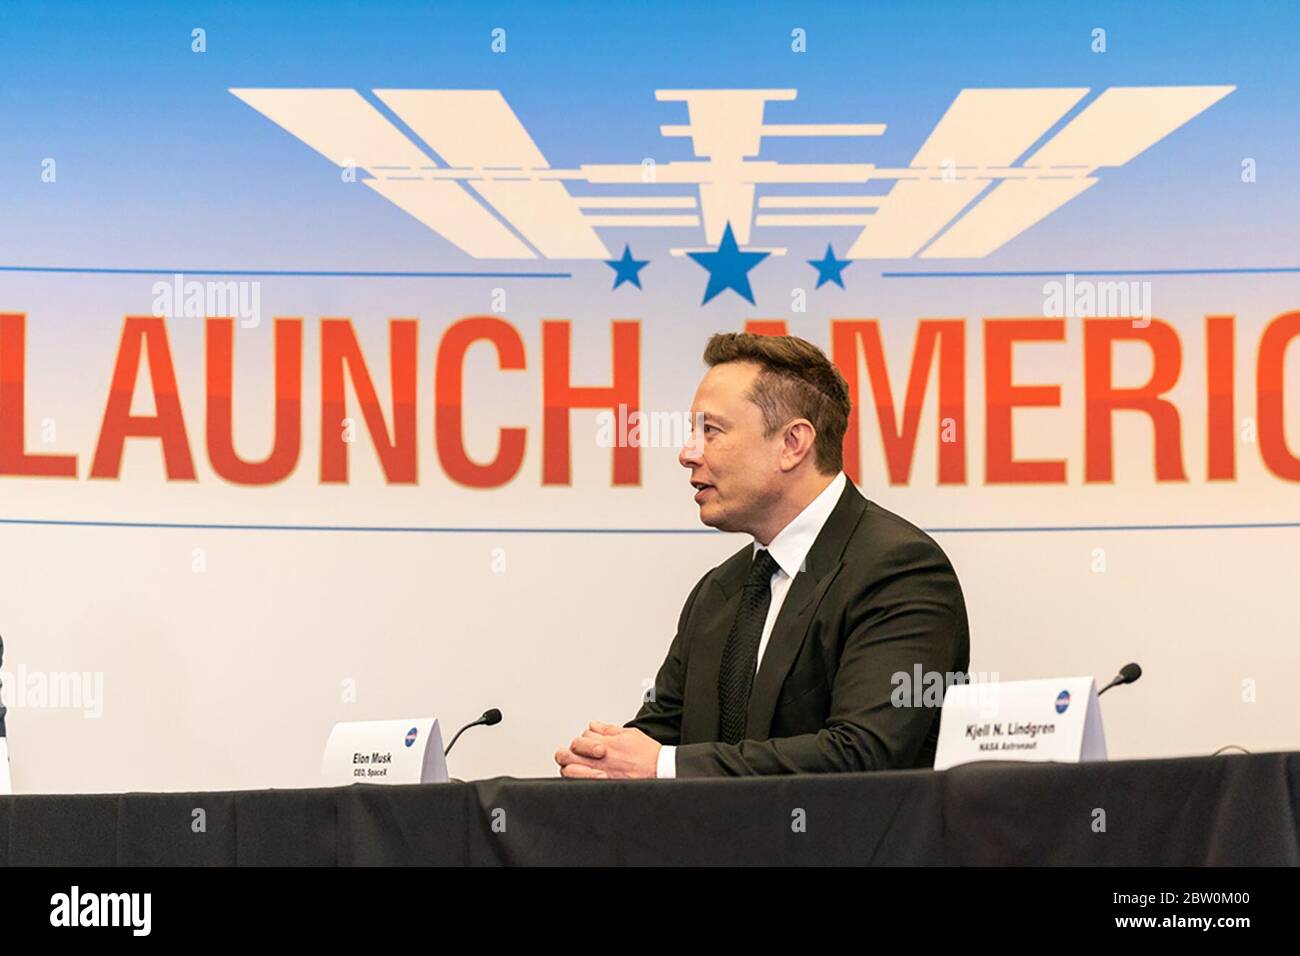 Elon Musk, fondateur de Space exploration technologies Corp.- SpaceX, se joint au président Donald J. Trump lors d'un exposé sur le lancement de la fusée SpaceX Falcon 9 avec le véhicule Crew Dragon, le mercredi 27 mai 2020, au Kennedy Space Center de Cape Canaveral, en Floride. (ÉTATS-UNIS) Banque D'Images